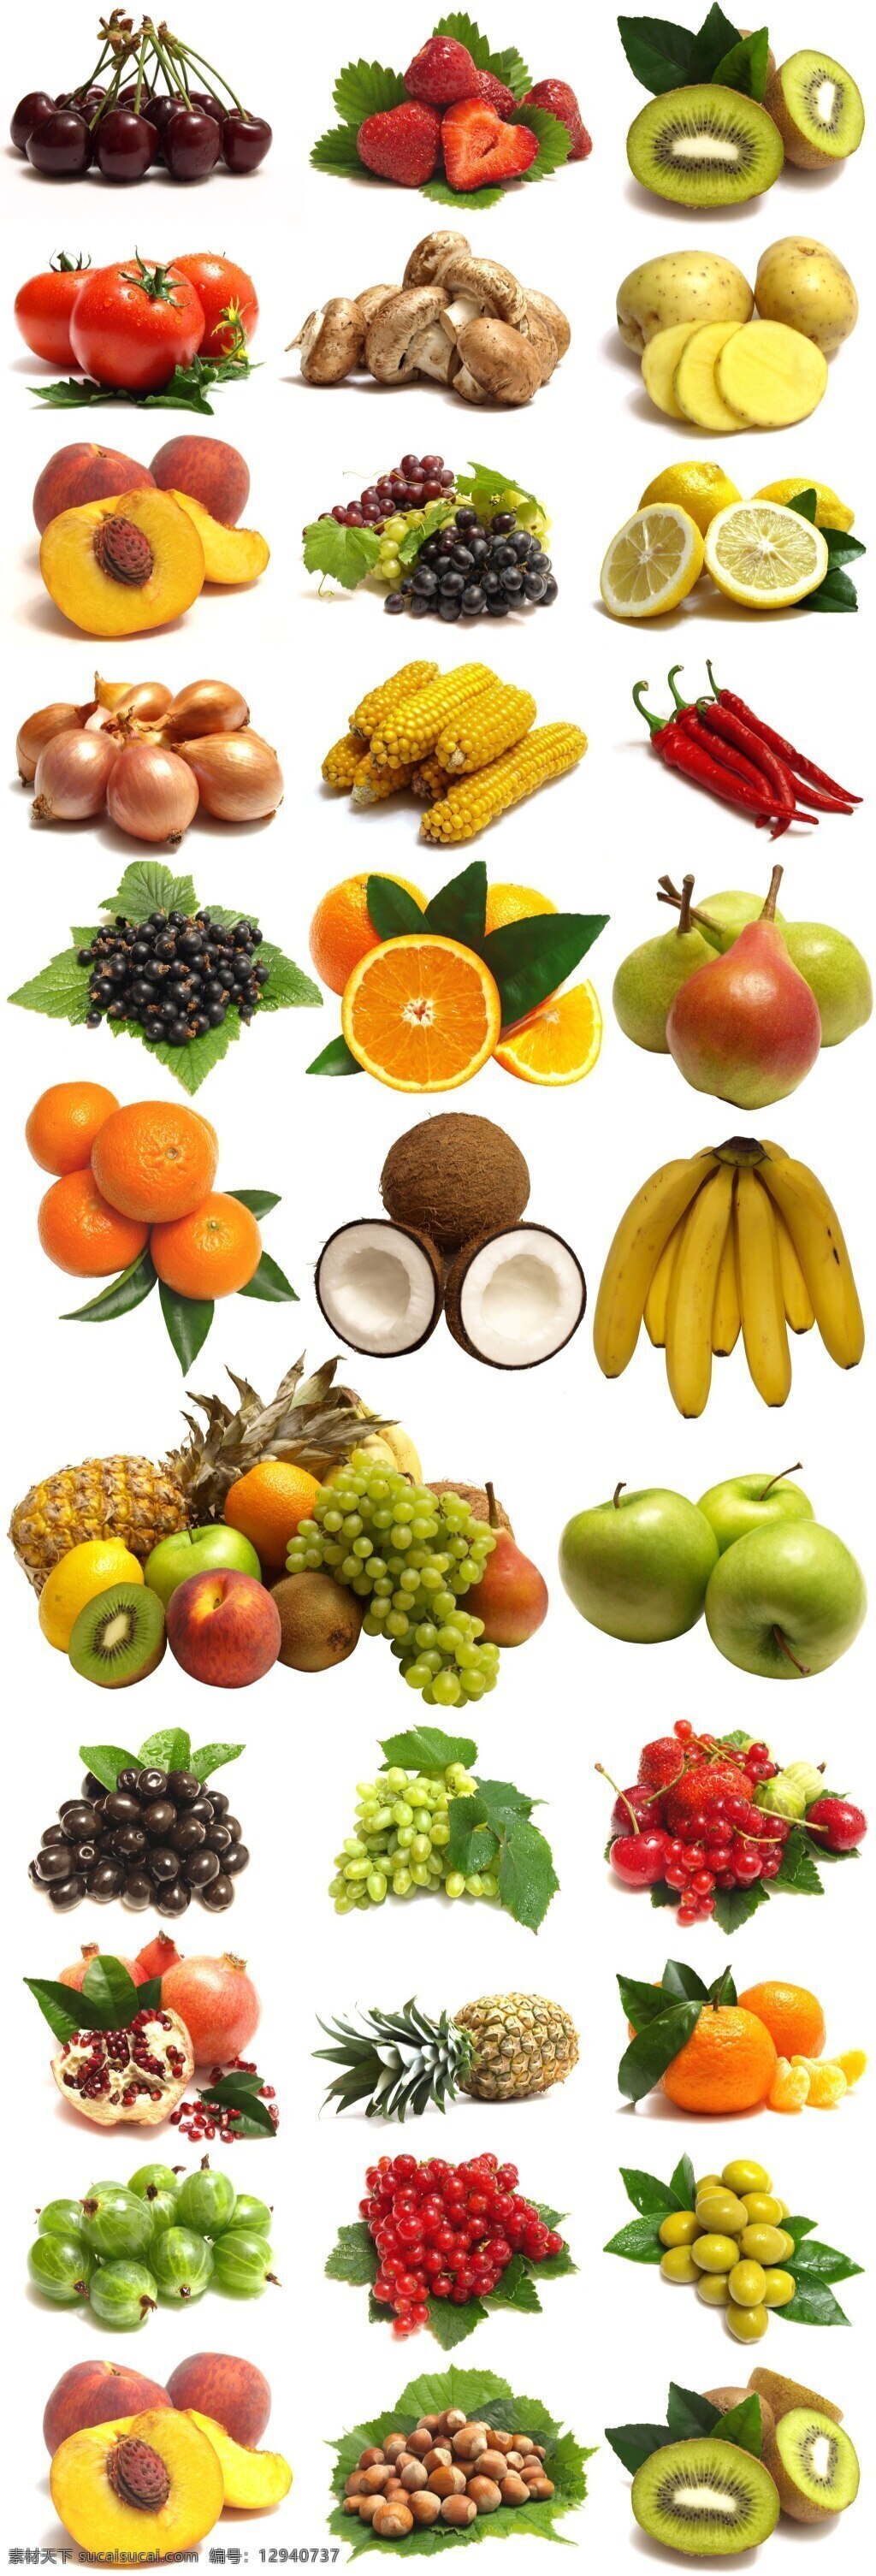 蔬菜 水果图片 水果 香蕉 玉米 樱桃 生活百科 餐饮美食